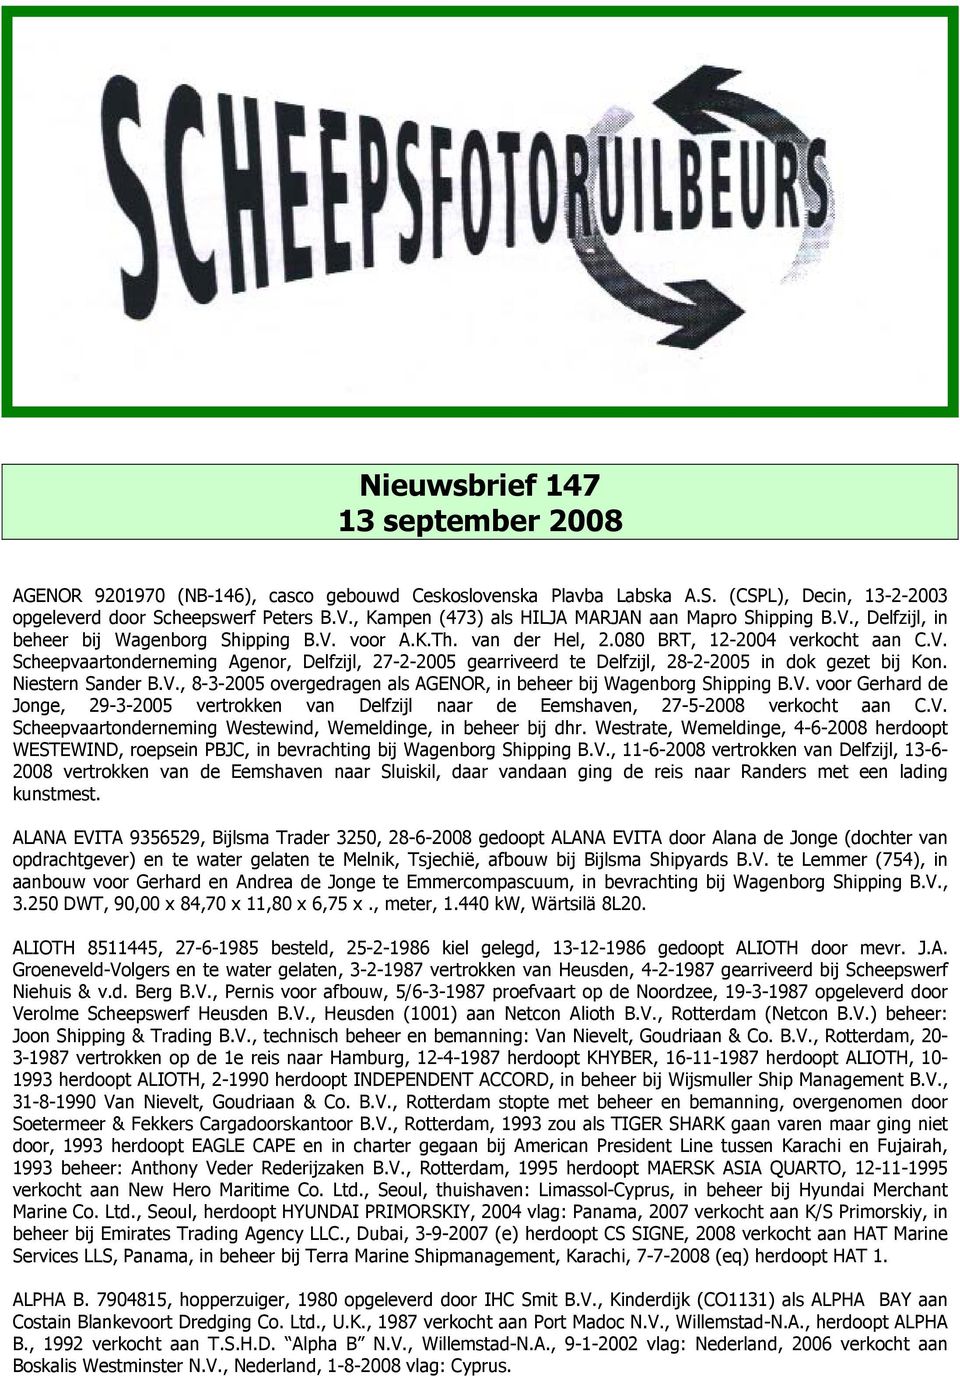 Niestern Sander B.V., 8-3-2005 overgedragen als AGENOR, in beheer bij Wagenborg Shipping B.V. voor Gerhard de Jonge, 29-3-2005 vertrokken van Delfzijl naar de Eemshaven, 27-5-2008 verkocht aan C.V. Scheepvaartonderneming Westewind, Wemeldinge, in beheer bij dhr.